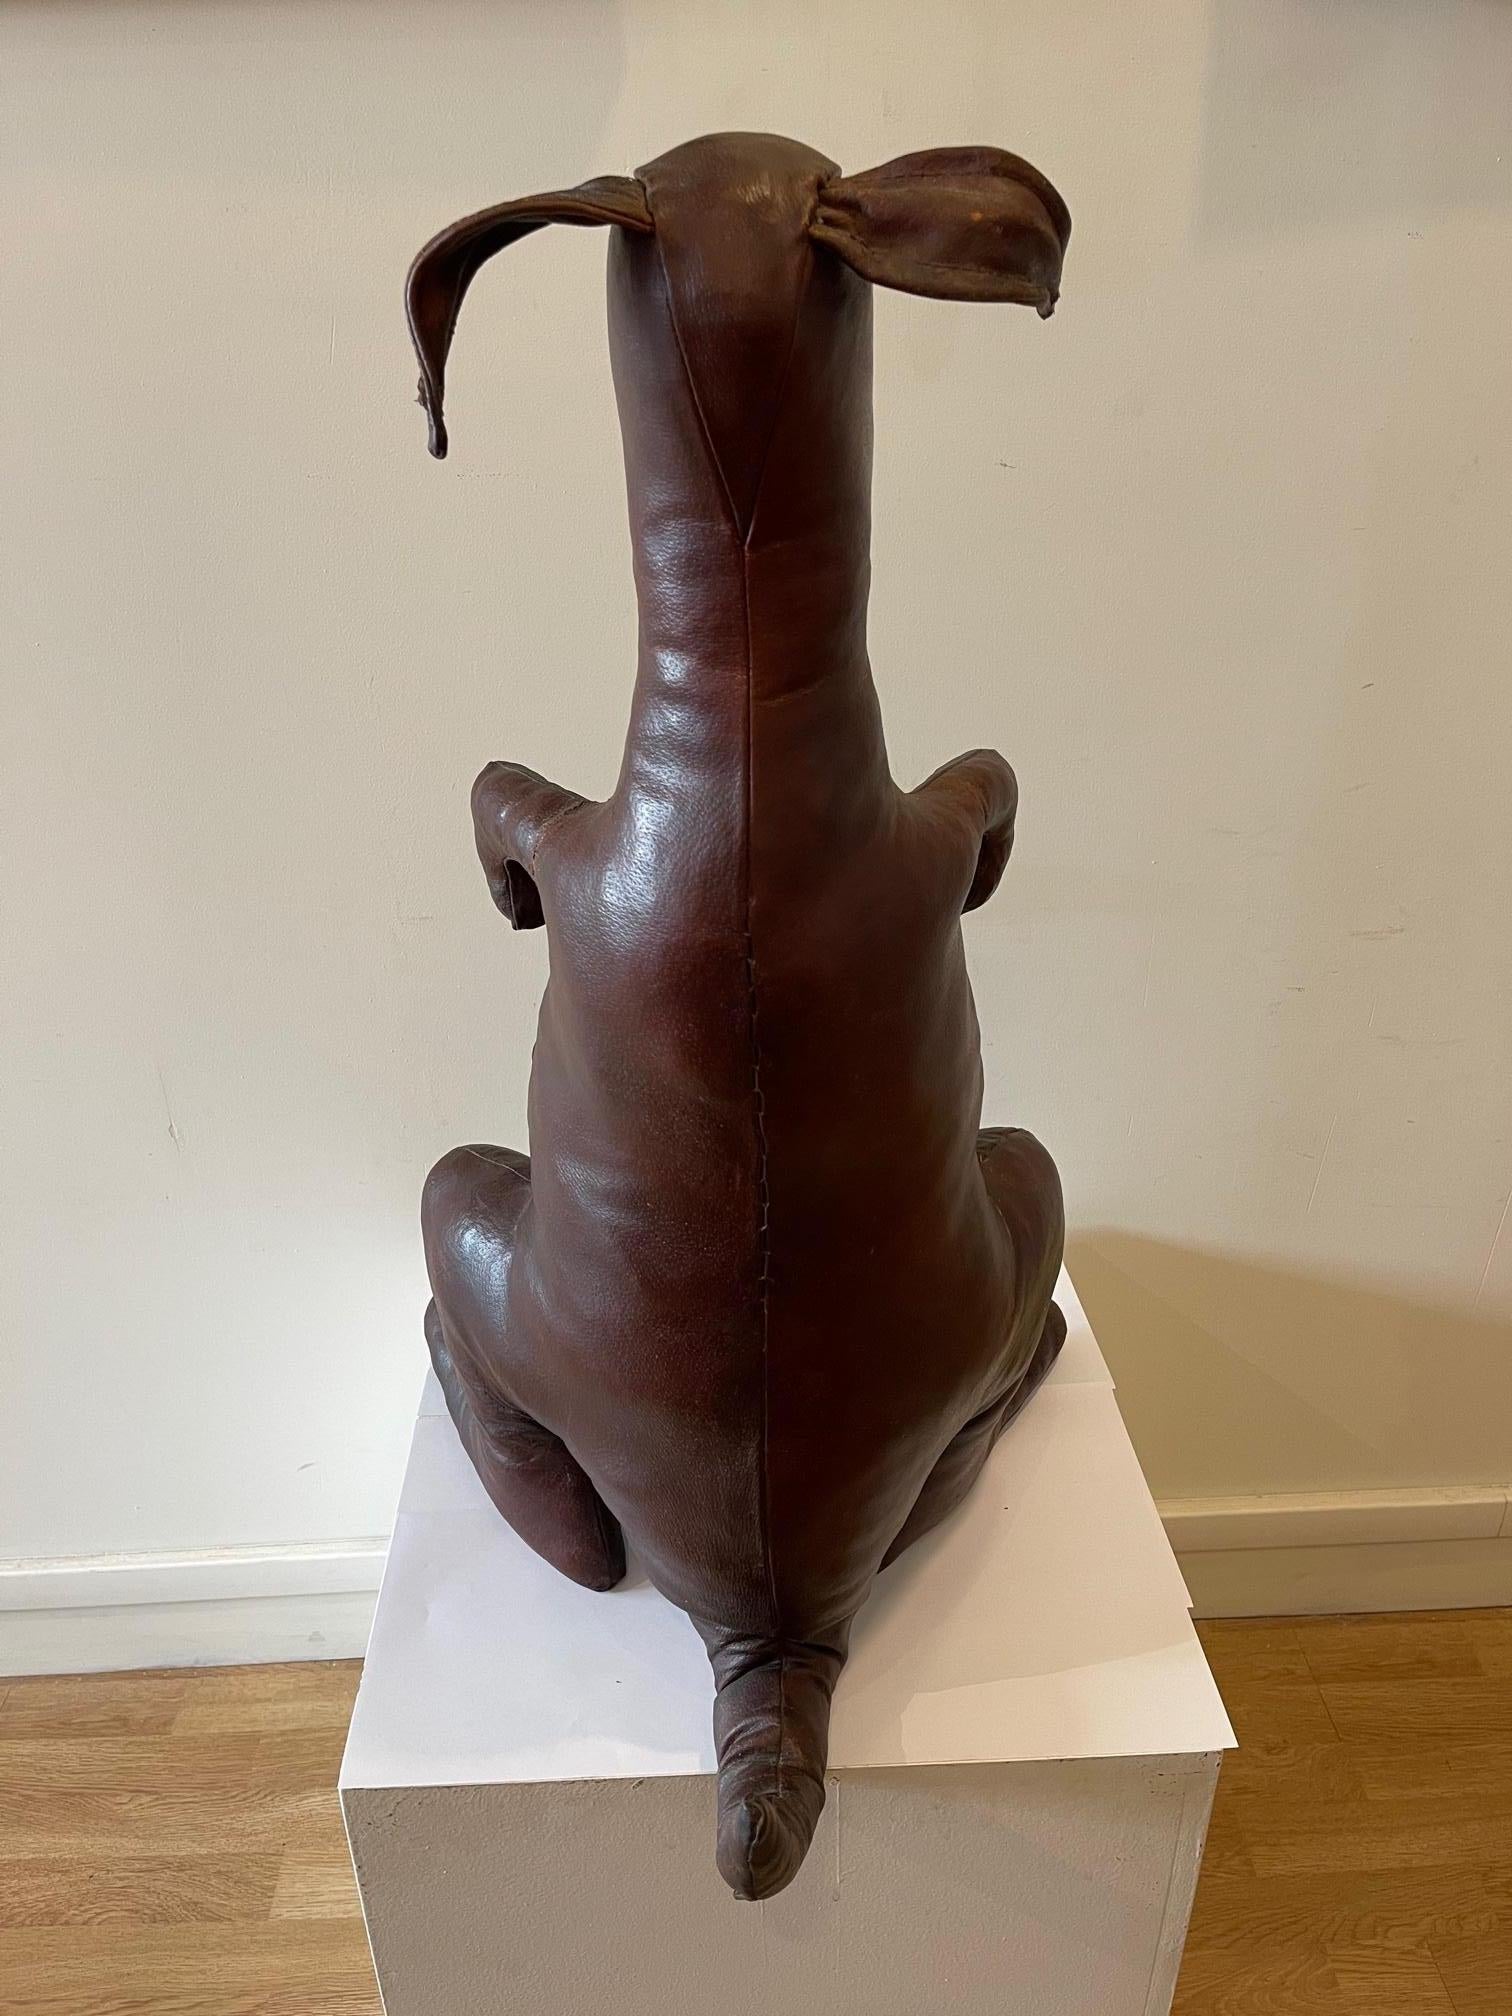 Kangaroo aus Leder von Dimitri Omersa, Großbritannien, 1960er Jahre (Mitte des 20. Jahrhunderts)